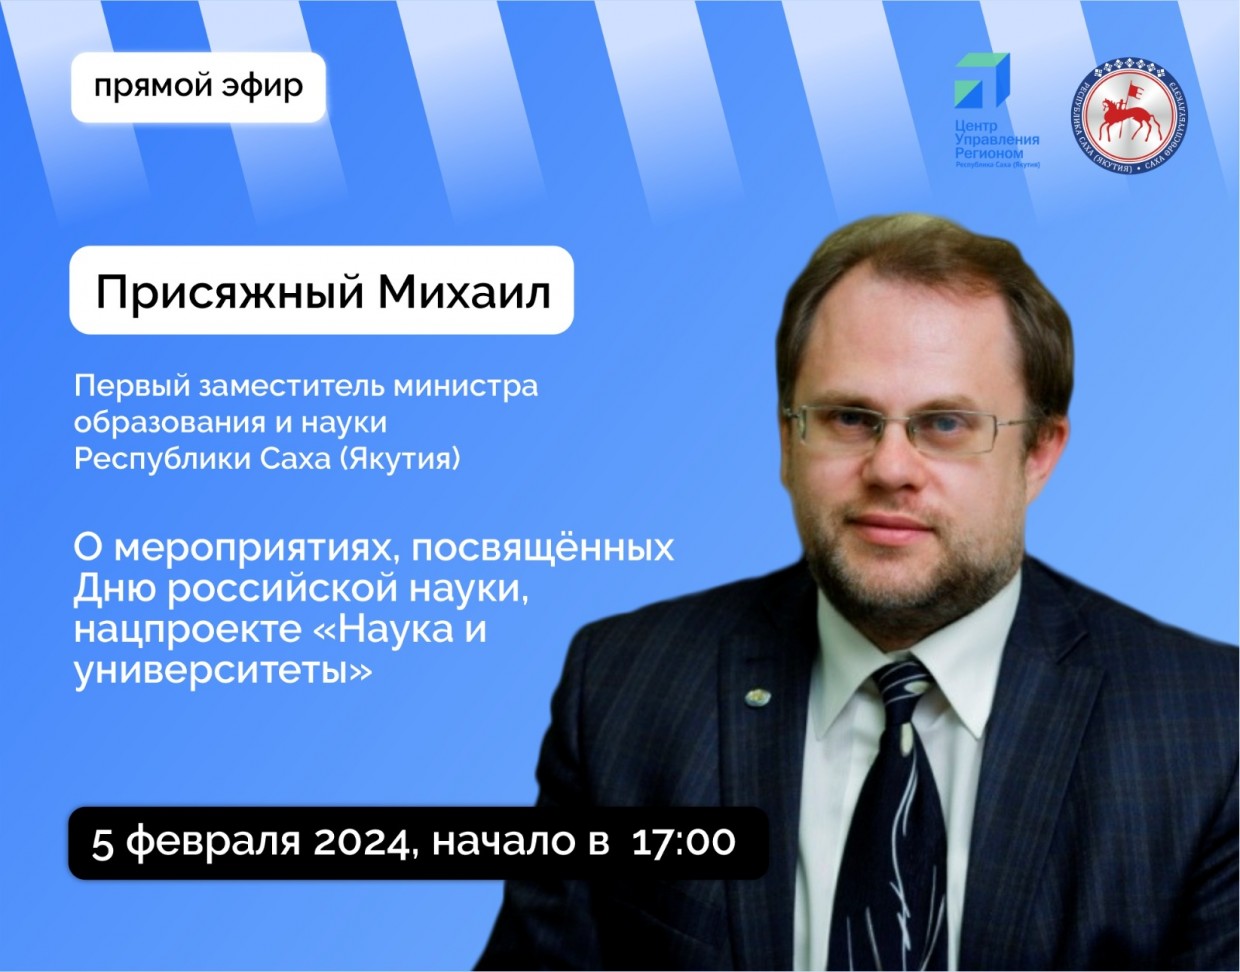 Михаил Присяжный ответит на вопросы в прямом эфире соцсетей